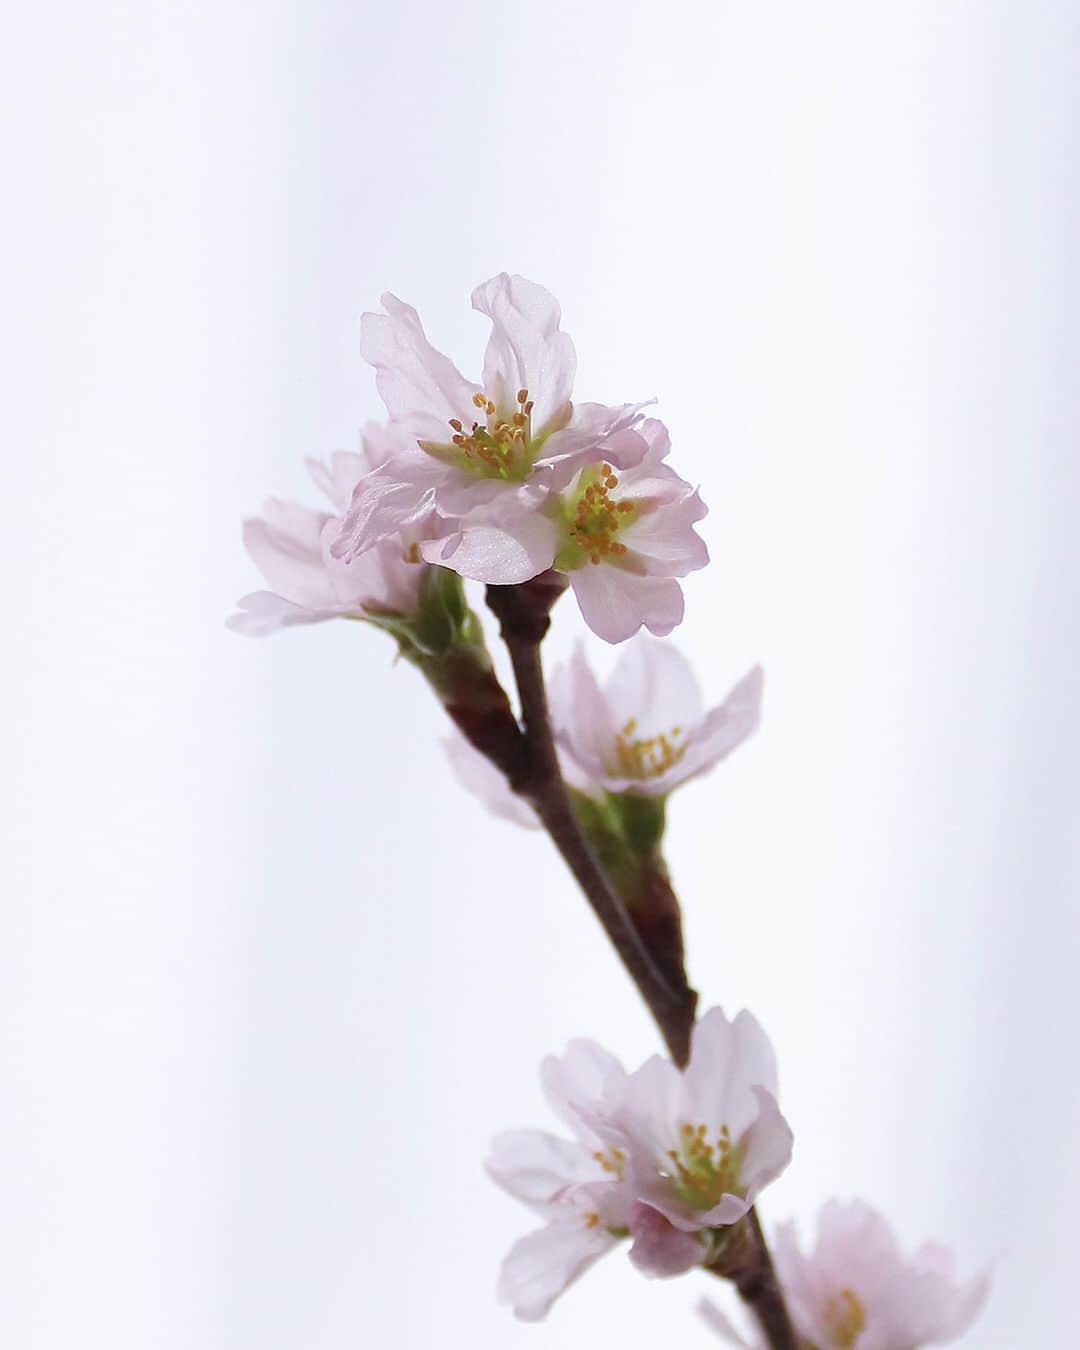 AETHERのインスタグラム：「-春の便り 桜の新革ができました。-﻿ ﻿ 今年も桜の開花予想が発表されましたね。﻿ ﻿ 自粛生活が始まってから一年弱…。﻿ 外でのお花見はまだ難しいかもしれませんが、お家の中でゆっくりと桜を楽しむのも、四季を感じられて良いかもしれません。﻿ ﻿ 本日更新のコラムでは、日本の桜の歴史や花言葉をご紹介。﻿ ﻿ おうち花見におすすめな桜の品種も解説しています。﻿ ﻿ コラムの最後には、桜にまつわるとっておきのお知らせも…🌸﻿ ﻿ コラムの全文は最新のストーリーズからアクセスいただけますので、ぜひ読んでみてくださいね。﻿ ﻿ ﻿ エーテルは、皆さまの春がよりわくわくするアイテムをたくさん企画しています。﻿ どうぞ、楽しみにお待ちください！﻿ ﻿ --------------------﻿ ﻿ * 春の便り 桜の新革ができました。*﻿ ﻿ https://aet.jp/contents/2021/02/08/flower_sakura/﻿ ﻿ --------------------﻿ ﻿ #aether #aether_leather #エーテル #本革 #レザー #春財布 #サクラ #さくら #桜 #桜柄 #サクラ柄 #桜色 #春色 #おうち花見 #おうち時間 #春 #啓翁桜 #ソメイヨシノ #フラワー #フェミニン #キラキラ #大人フェミニン #花のある生活 #花のある暮らし #花言葉 #花 #flower #flowers #sakura #🌸﻿ ﻿」